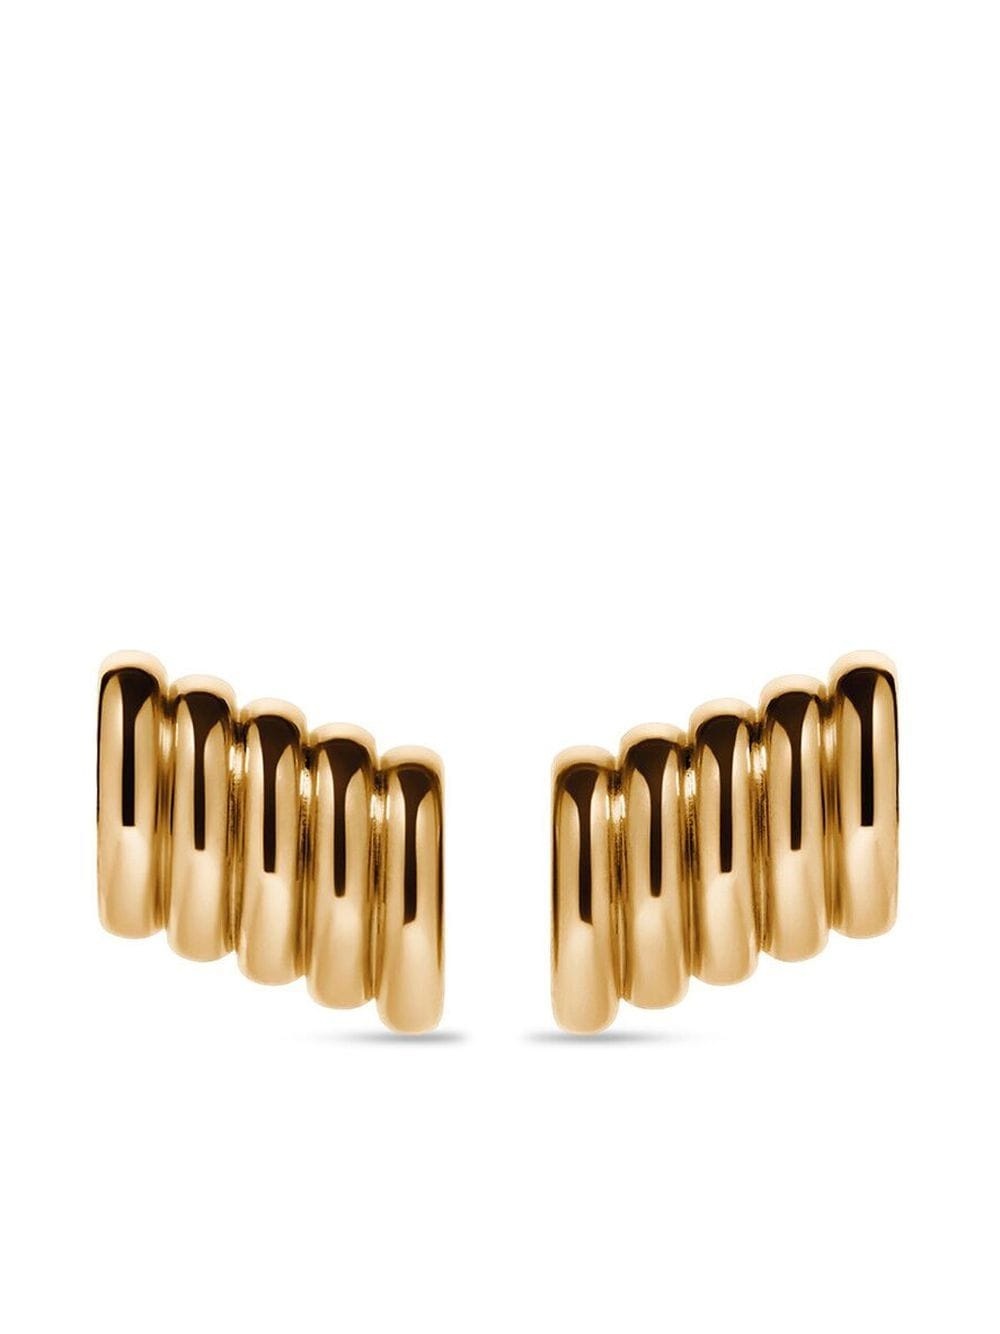 XS Rib earrings - 1